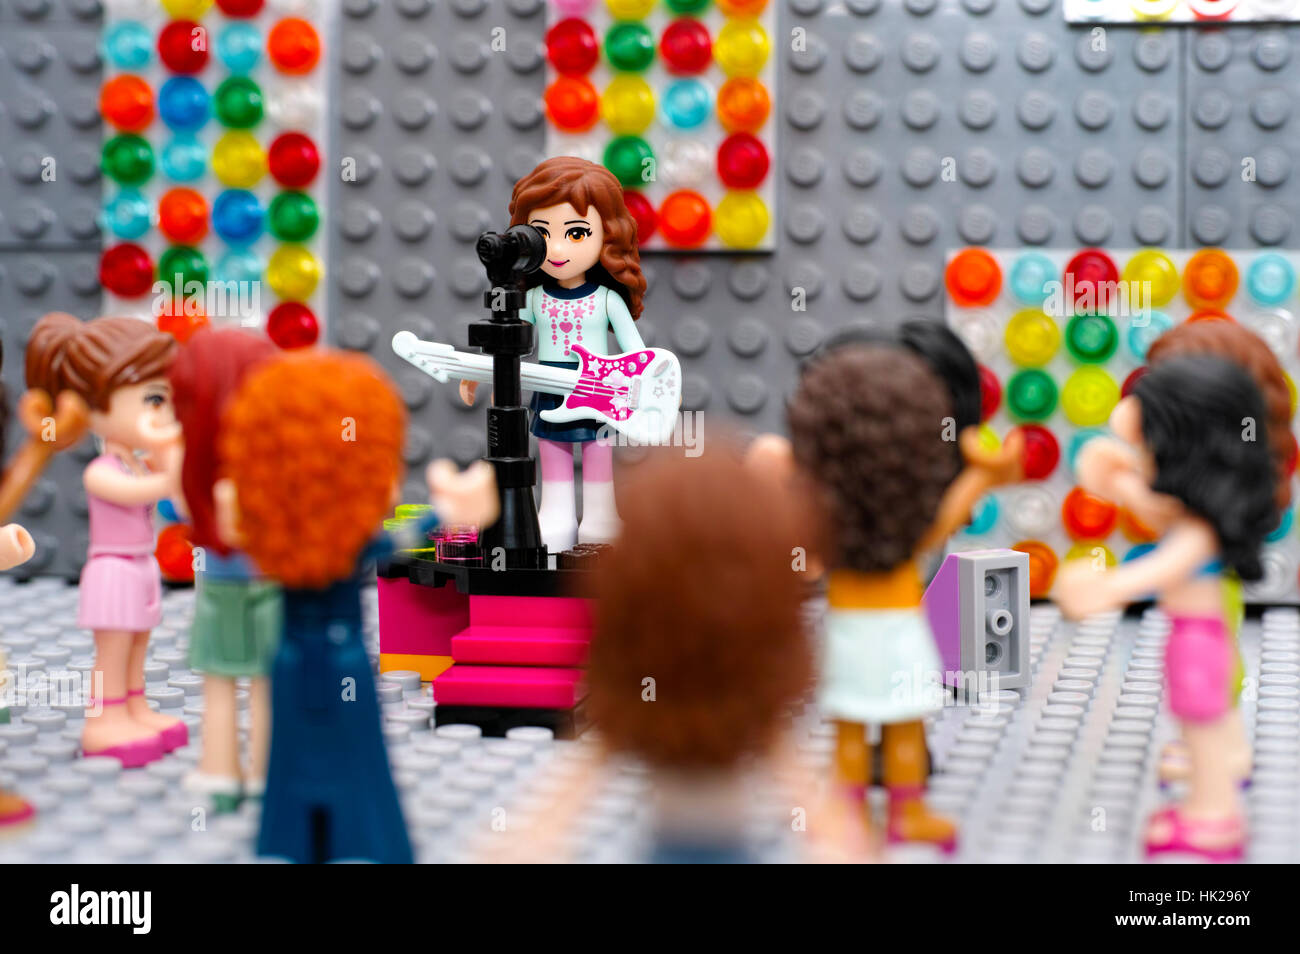 Tambow, Russische Föderation - 29. August 2015 Lego Konzert. LEGO-Freunde-Mädchen-Minifigur  mit e-Gitarre mit Mikrofon und Publikum auf der Bühne Stockfotografie -  Alamy